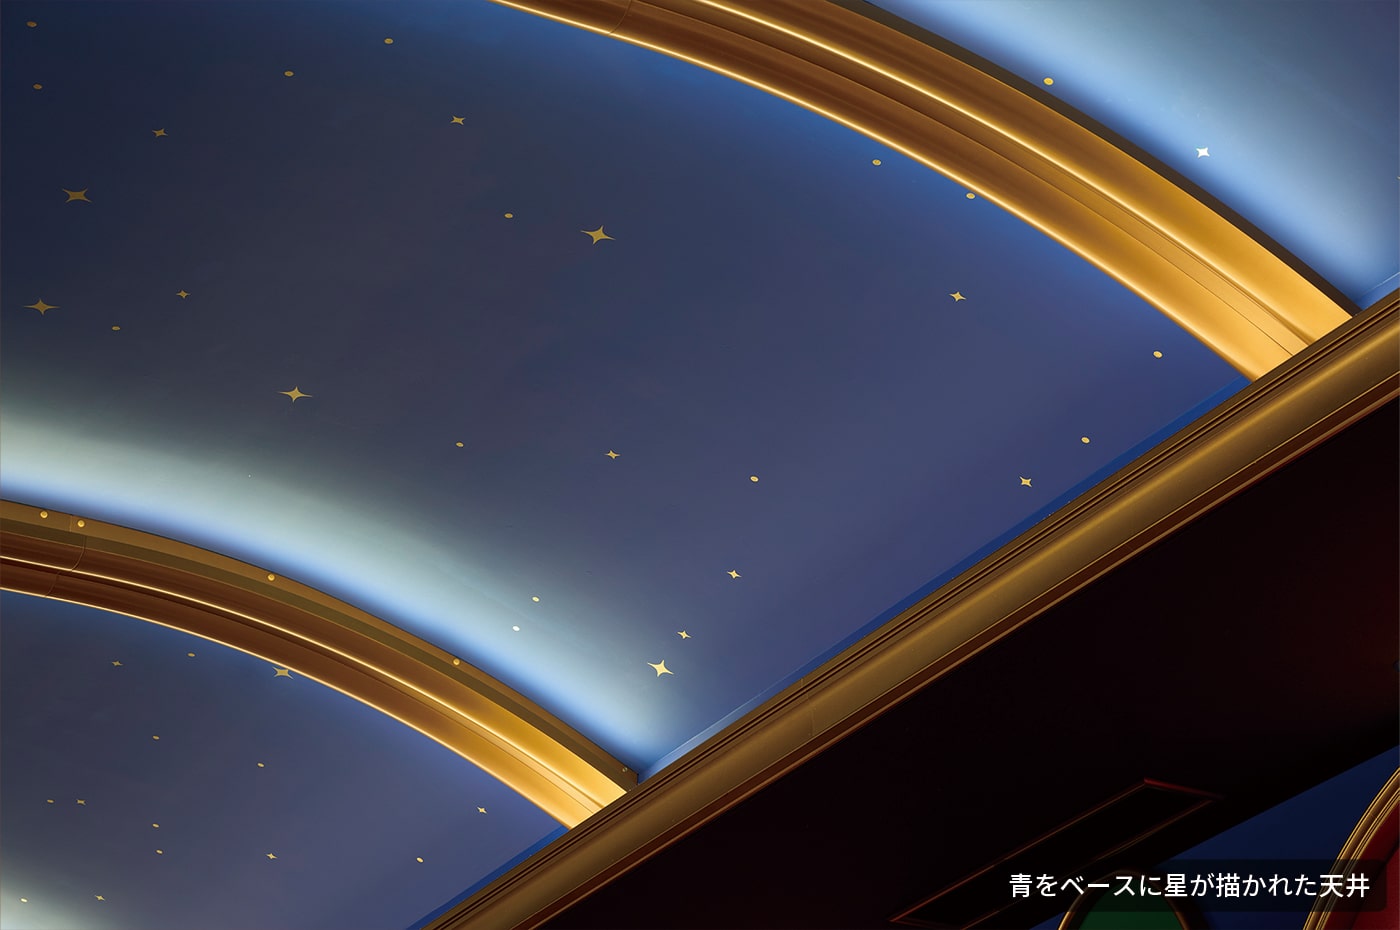 青をベースに星が描かれた天井